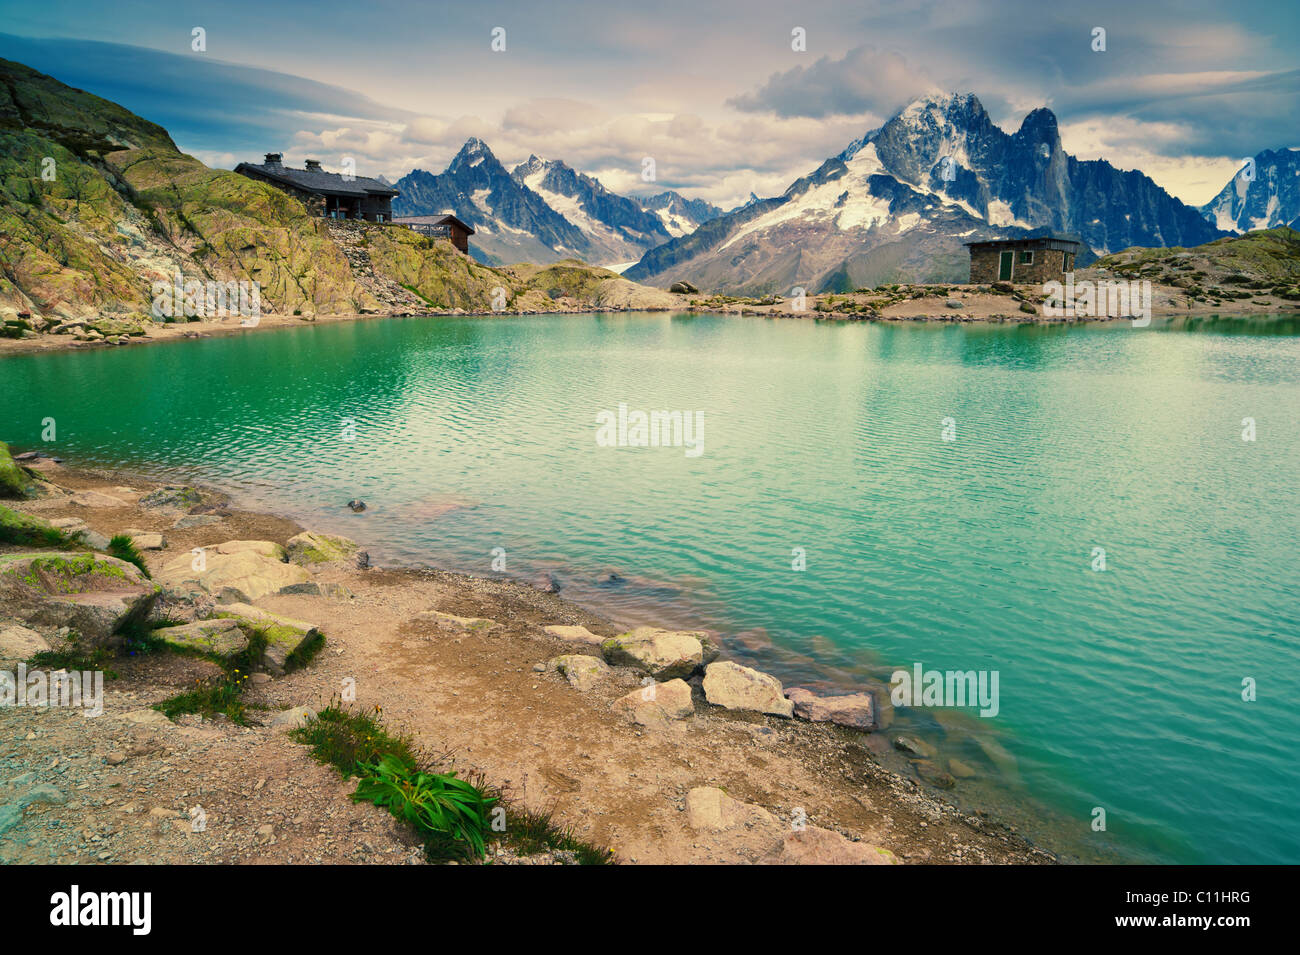 Bergsee. Lac Blanc, Chamonix, Frankreich. Beliebte touristische Destination in den französischen Alpen. Stockfoto